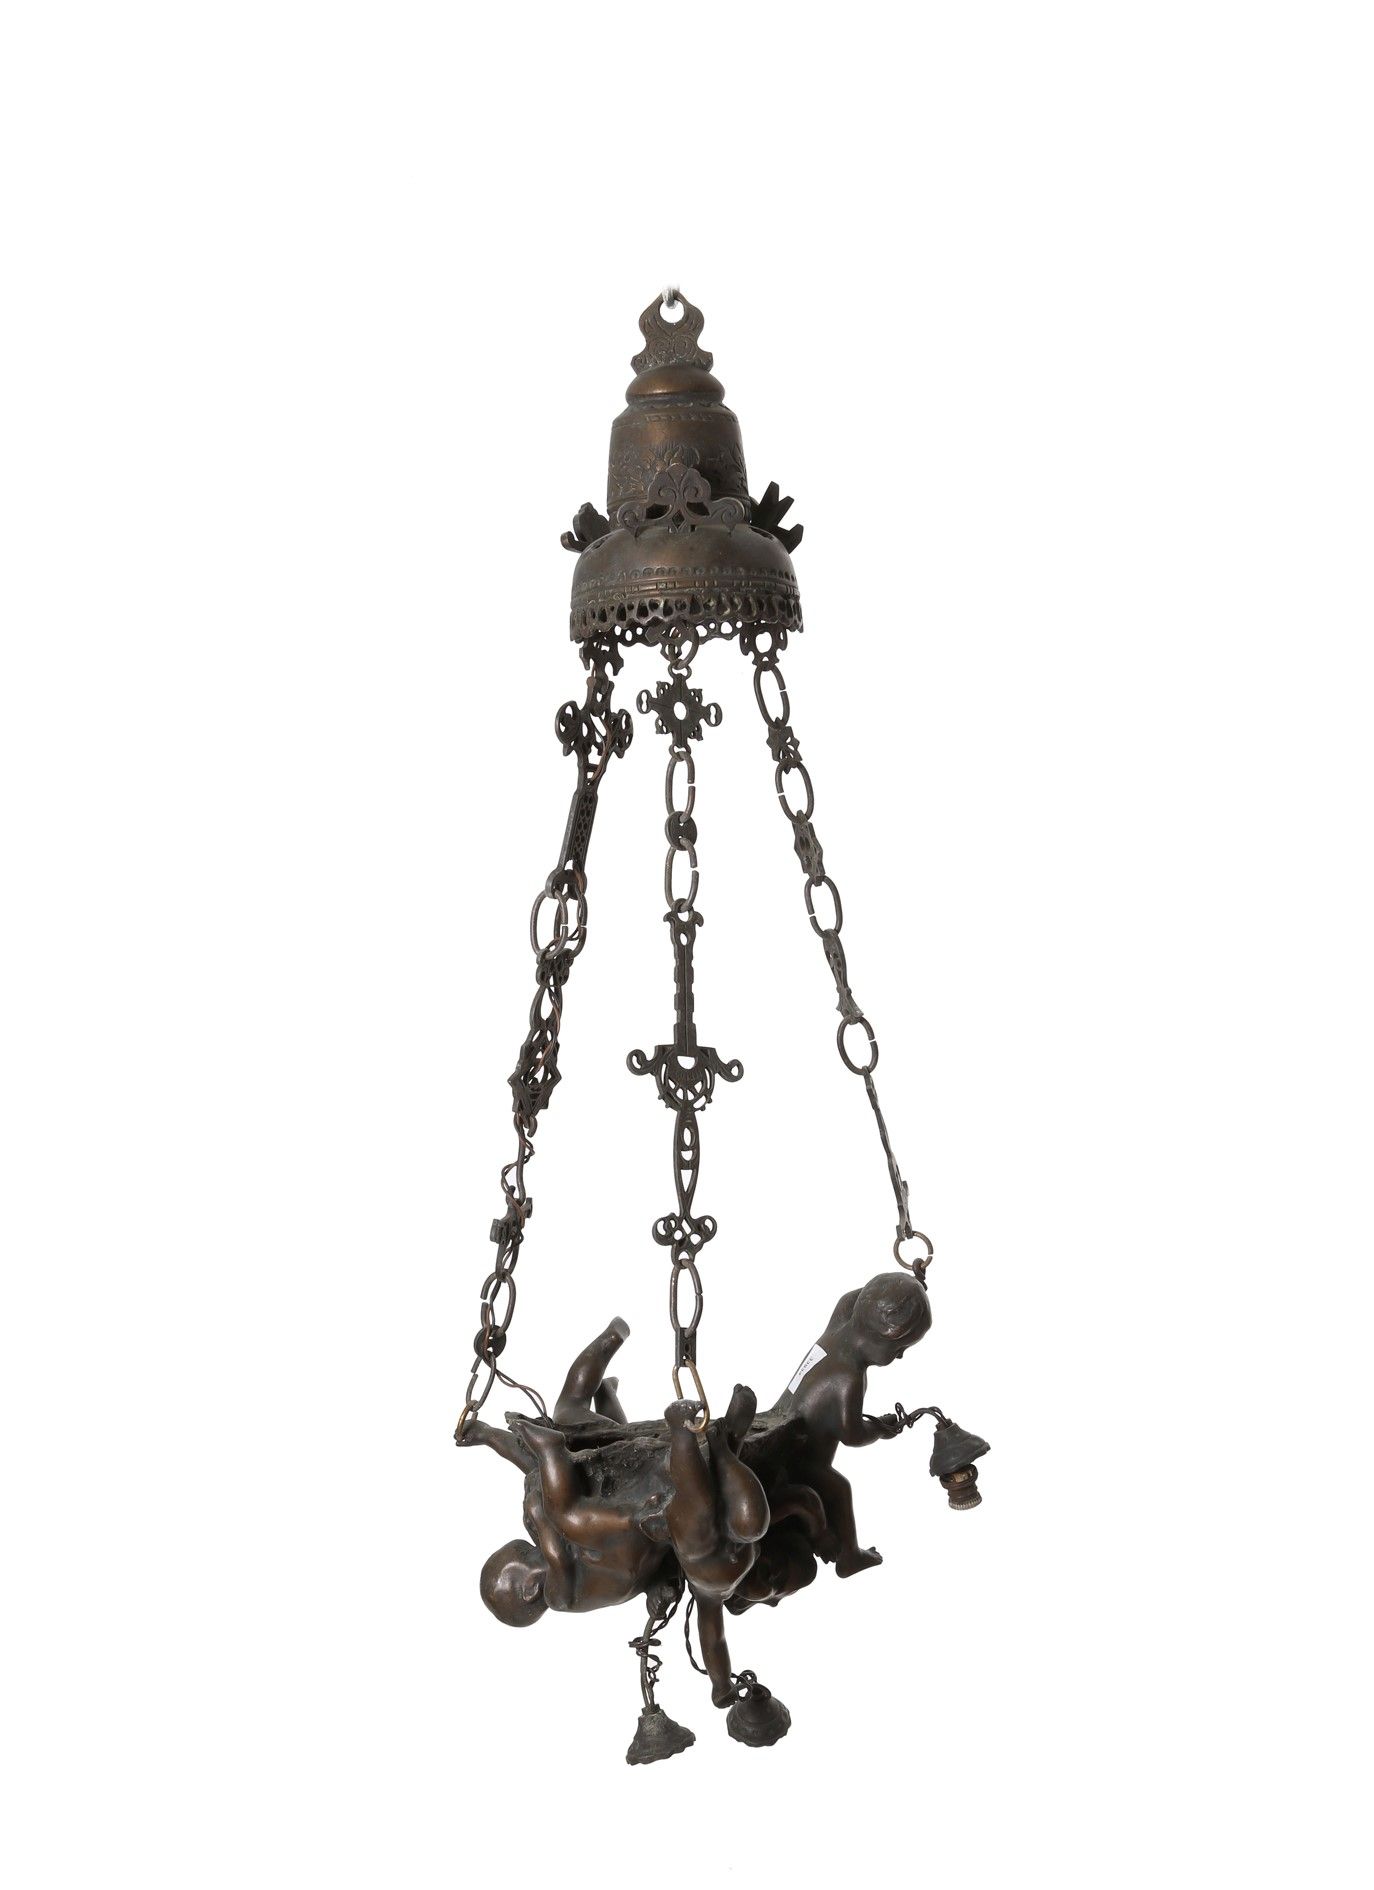 Bronze chandelier 带有普提的青铜吊灯。20世纪初。缺陷和缺失。高约96厘米。